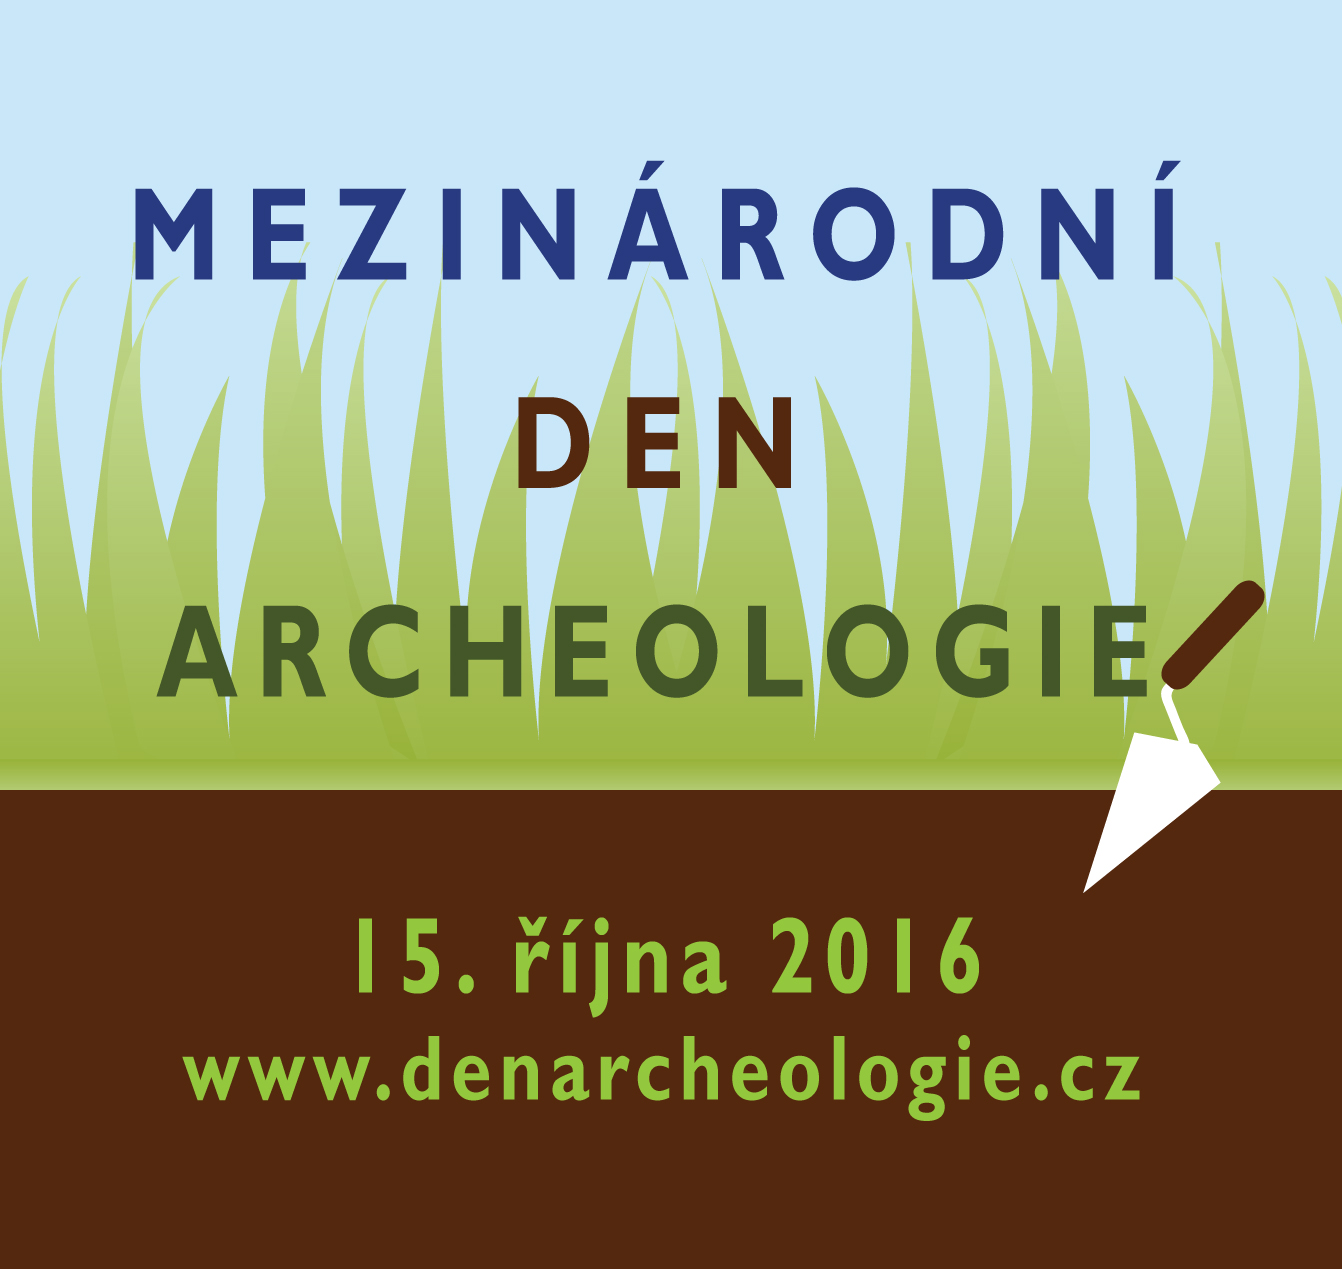 Hrdličkovo muzeum člověka se zúčastní Mezinárodního dne archeologie